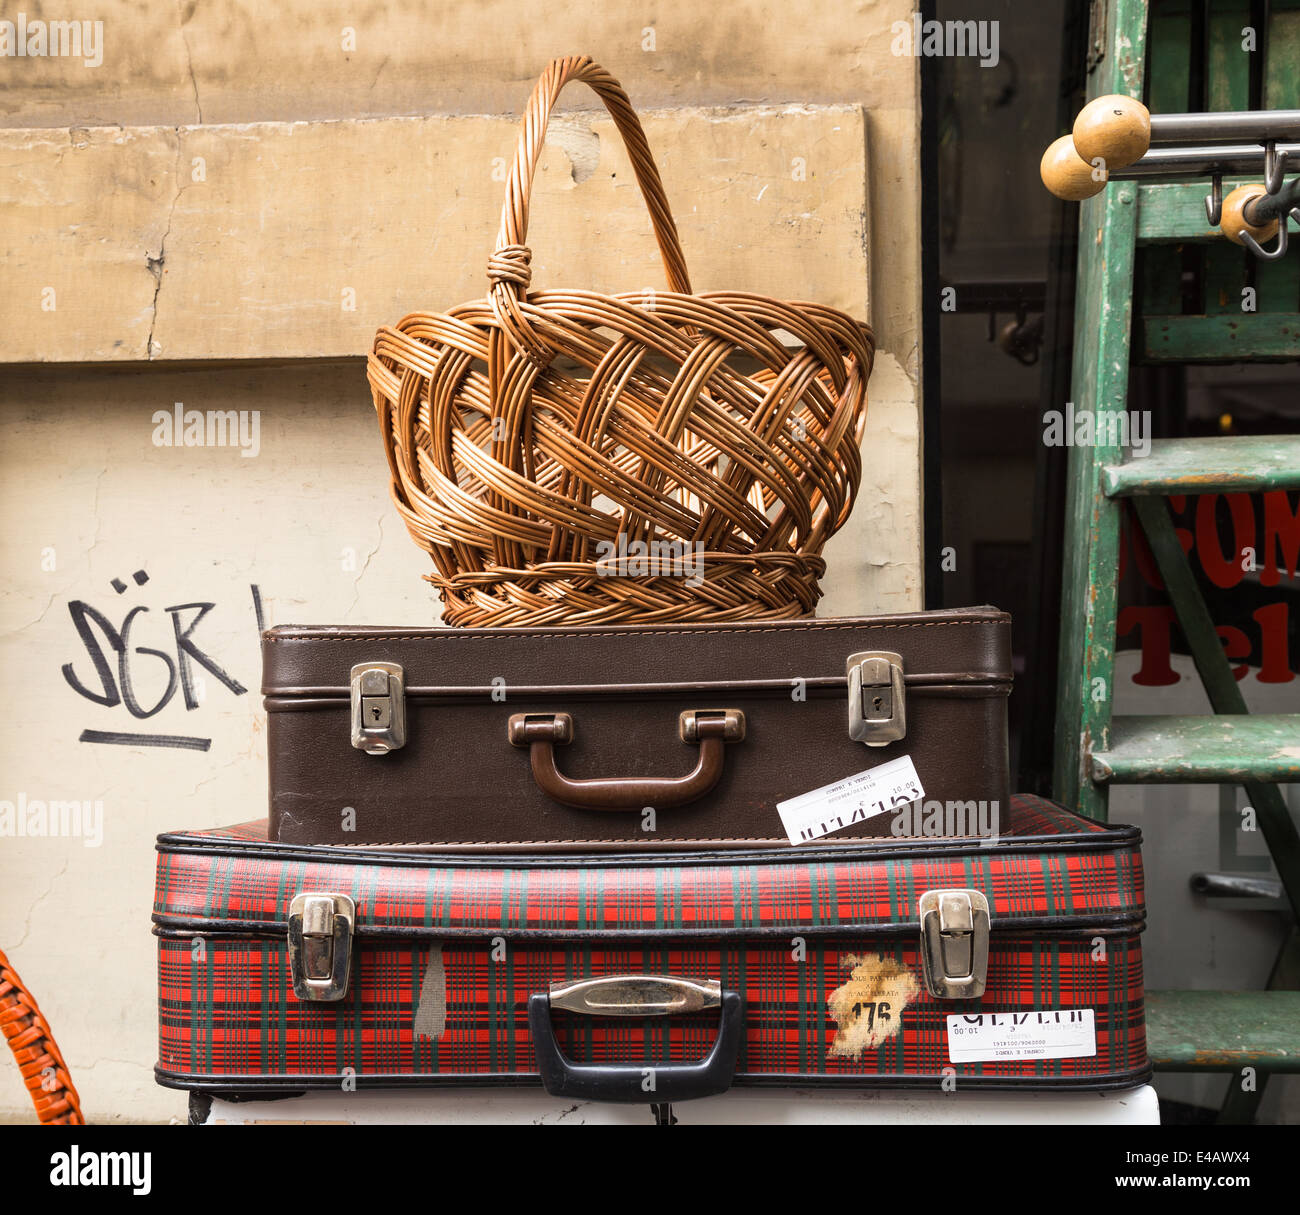 Negozio di valigie immagini e fotografie stock ad alta risoluzione - Alamy